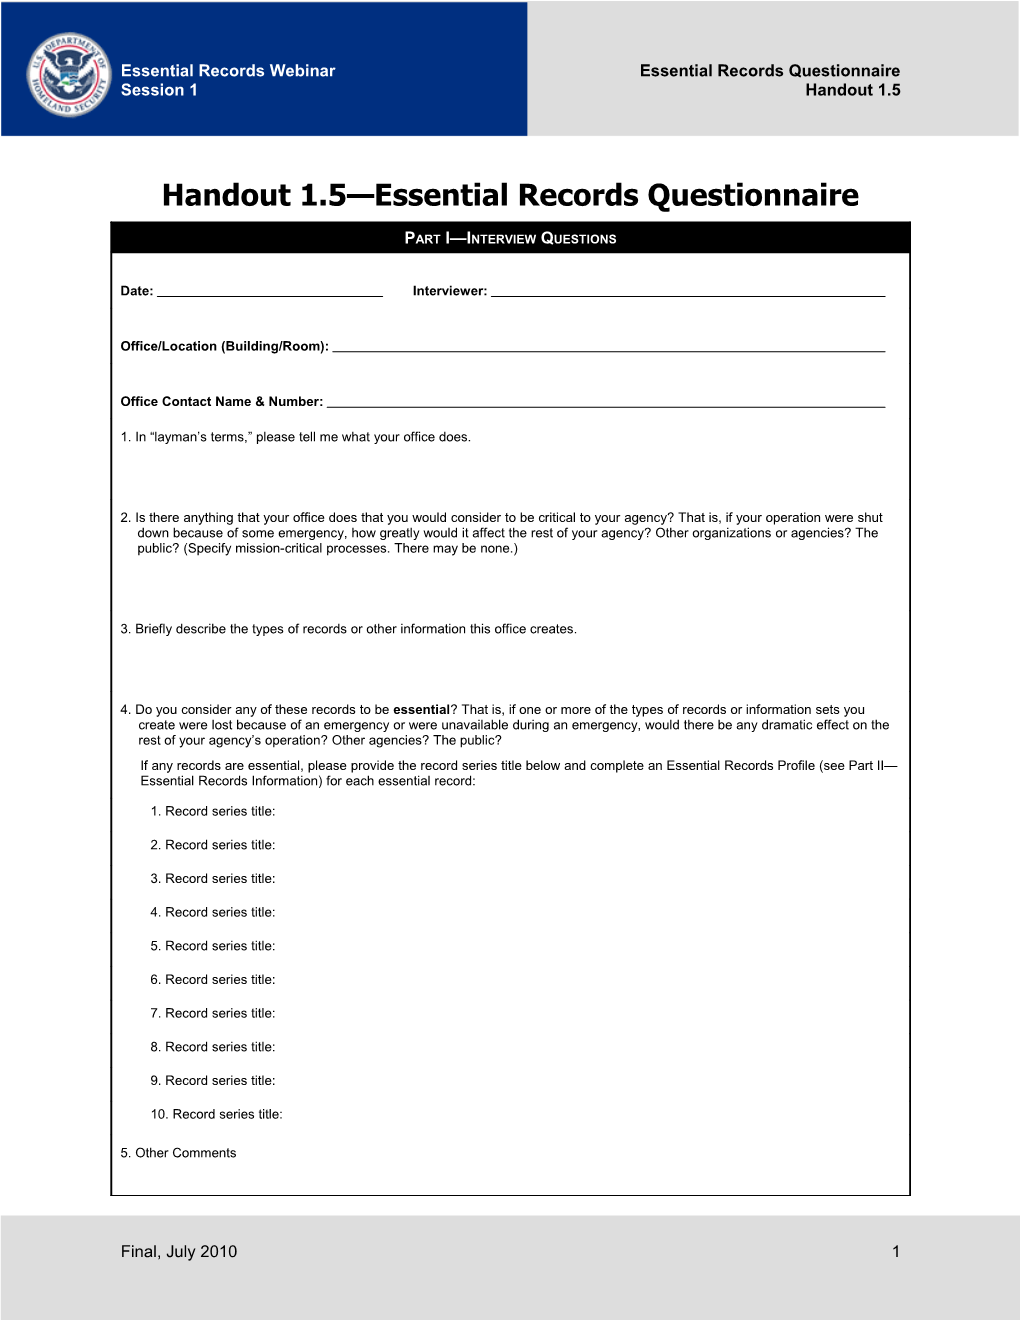 Handout 1.5: Essential Records Questionnaire